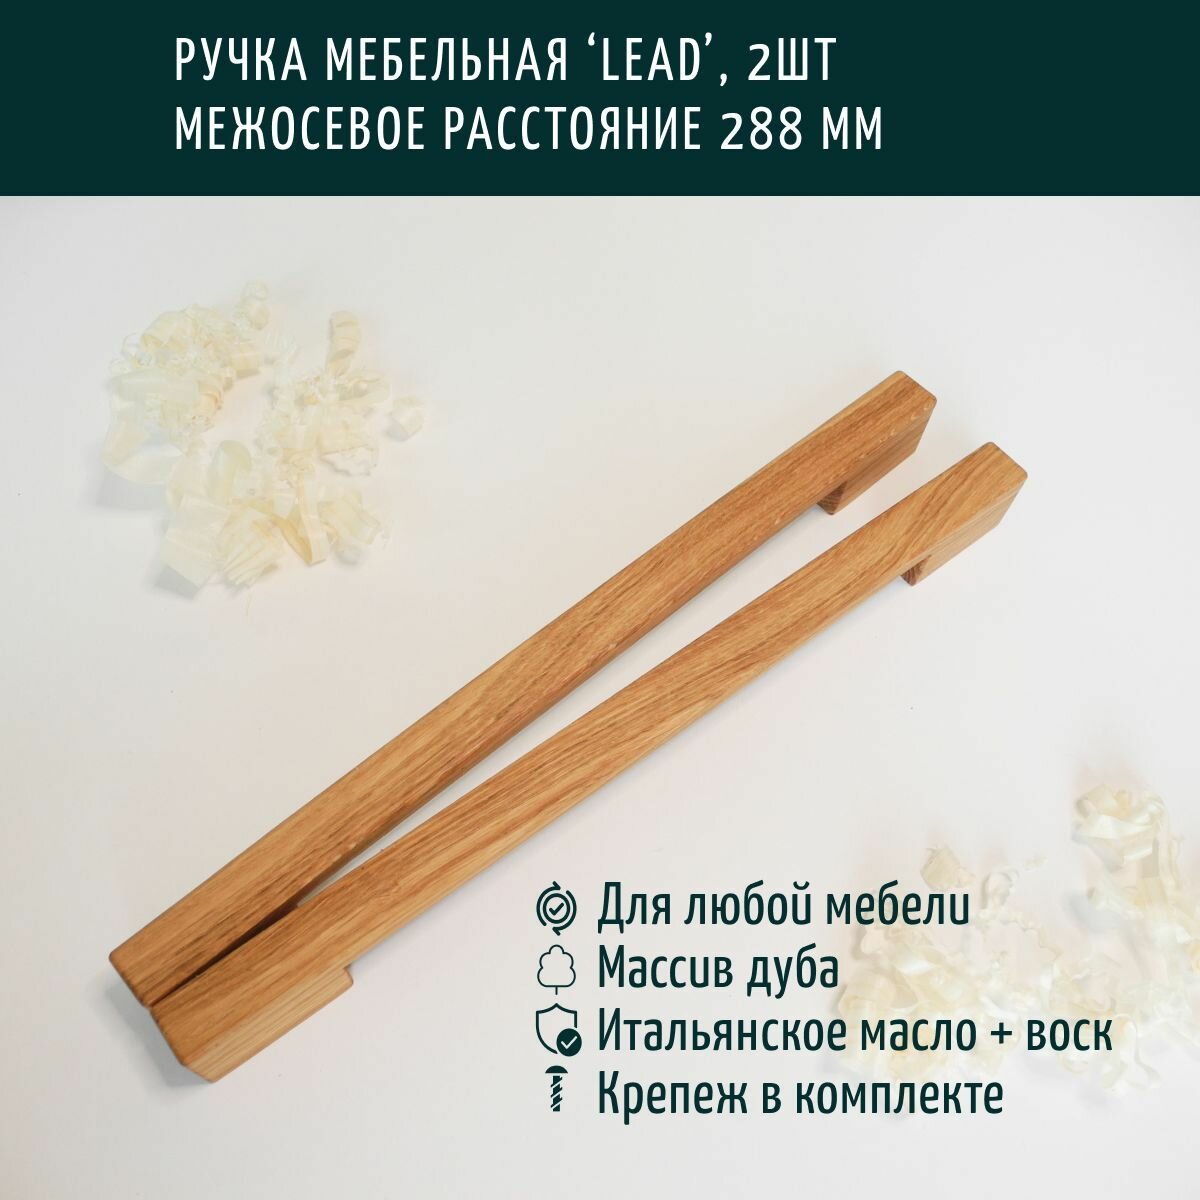 Ручка мебельная деревянная, скоба, Леонидыч 'Lead', дуб, 288 мм,2 шт